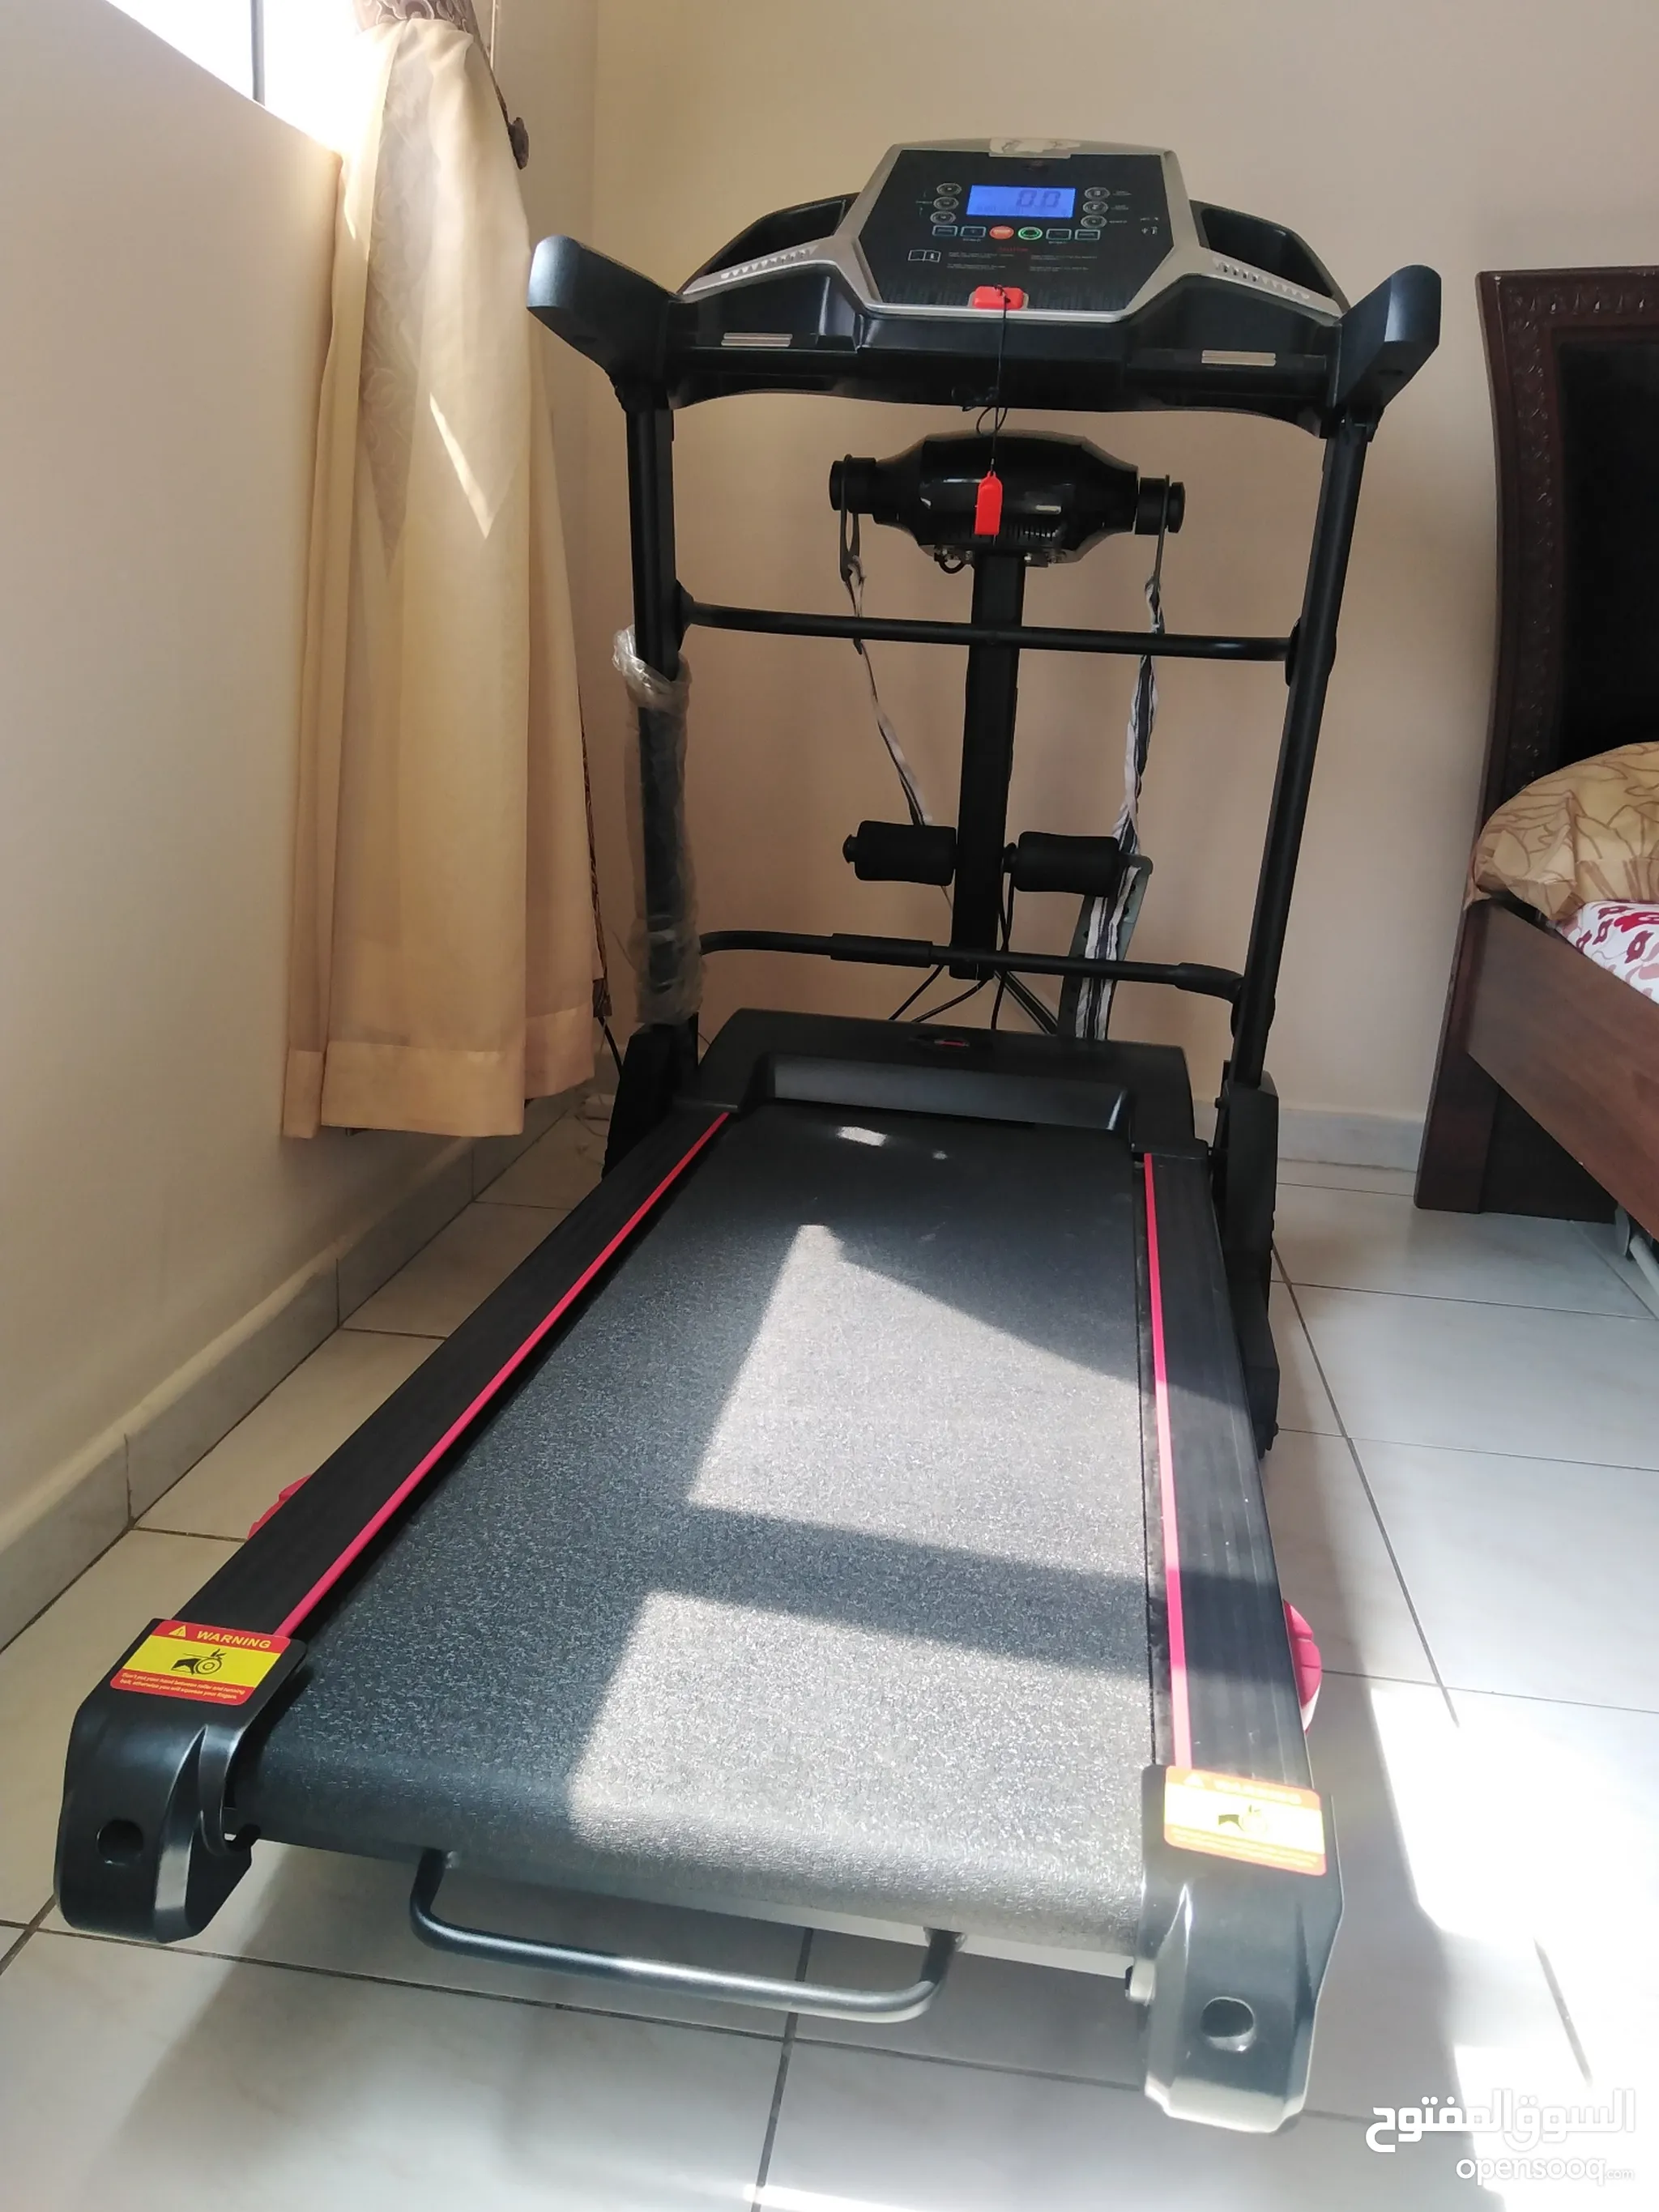 اجهزة رياضية - معدات رياضية : ادوات رياضية منزلية في الإمارات : أفضل سعر